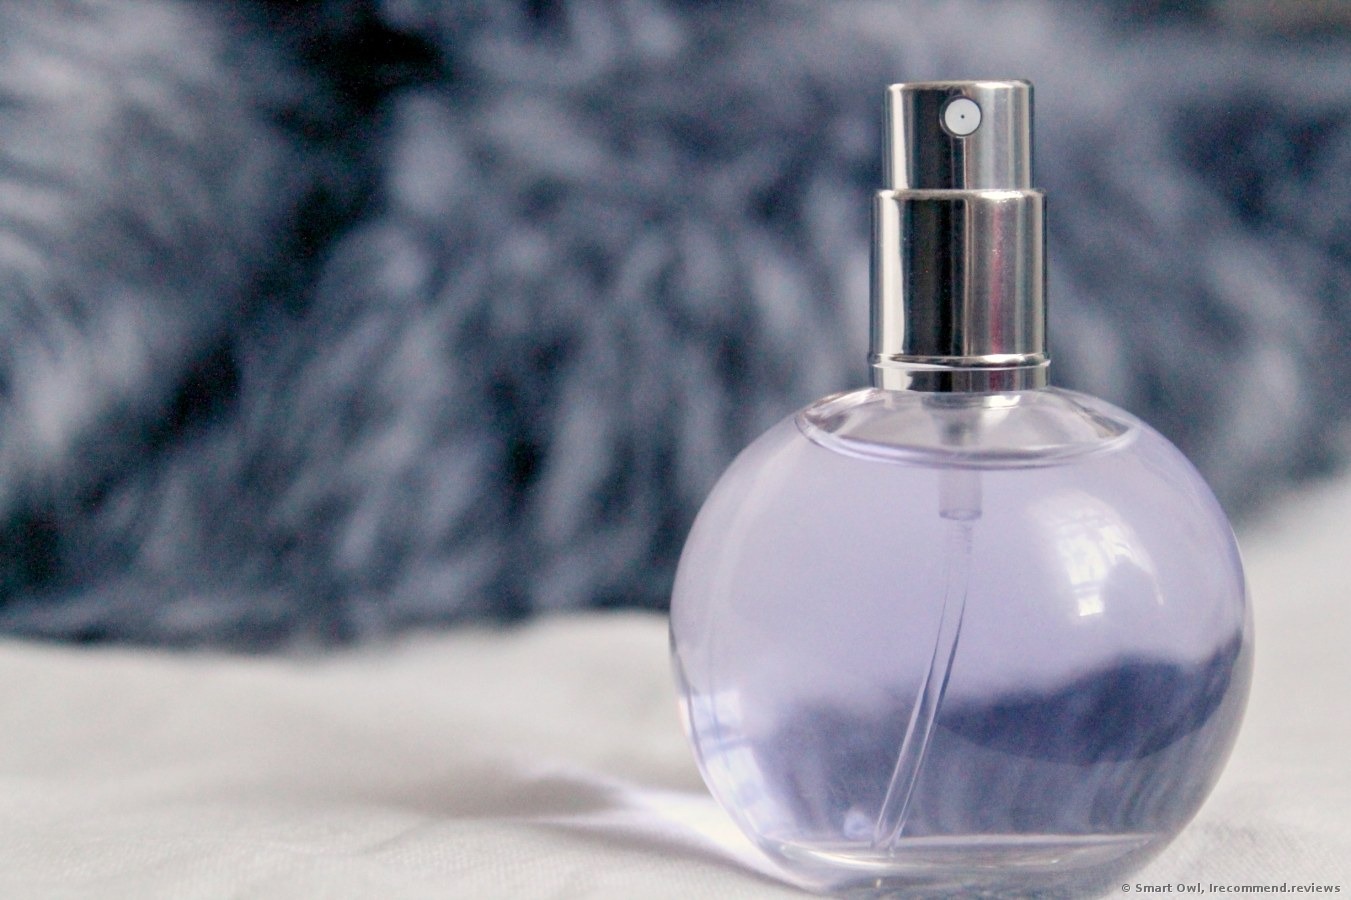 eclat perfume review